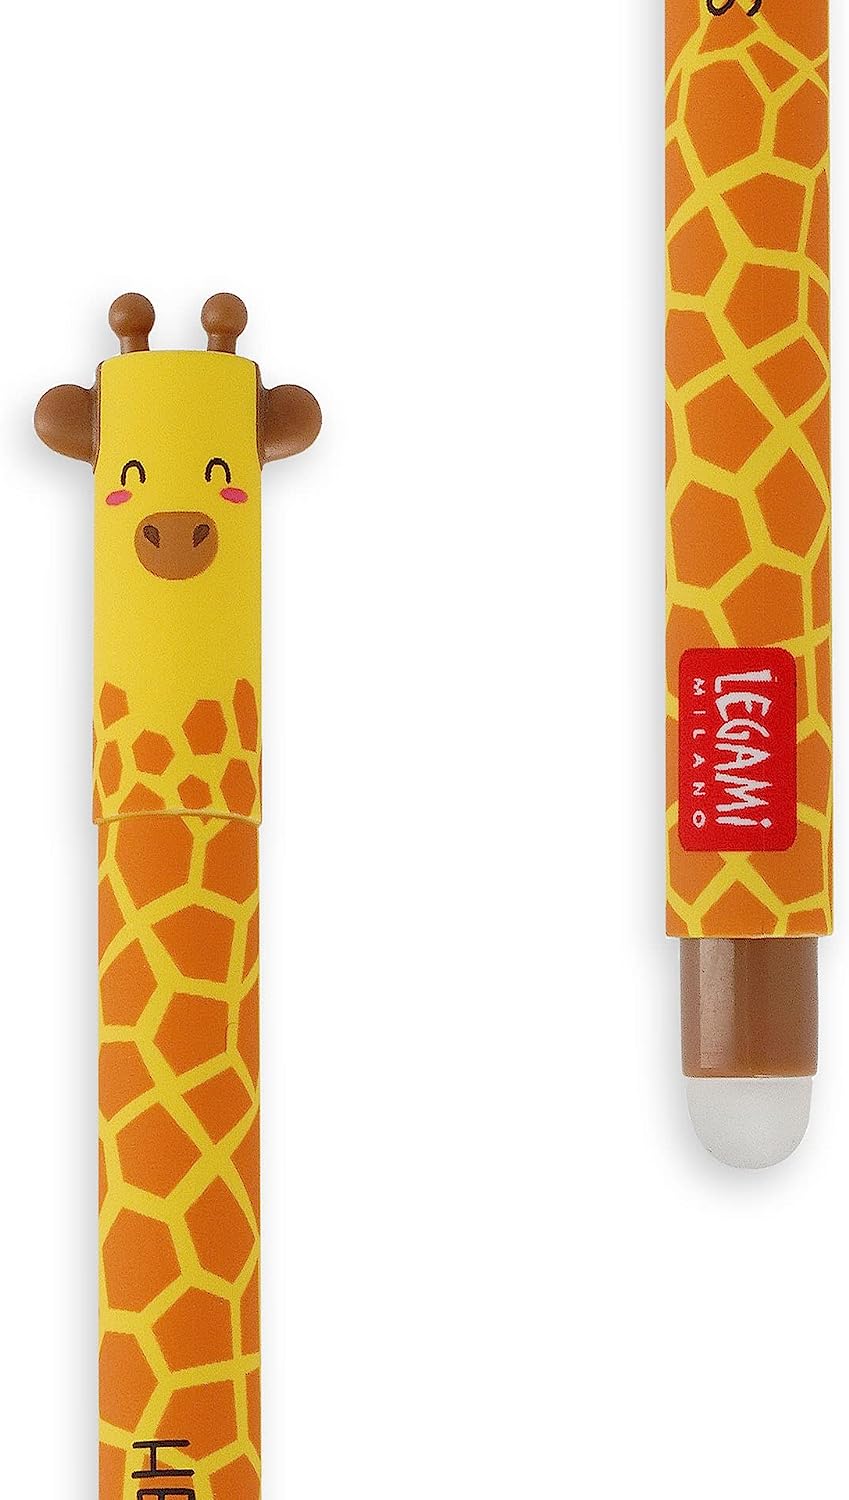 Erasable Giraffe Pen